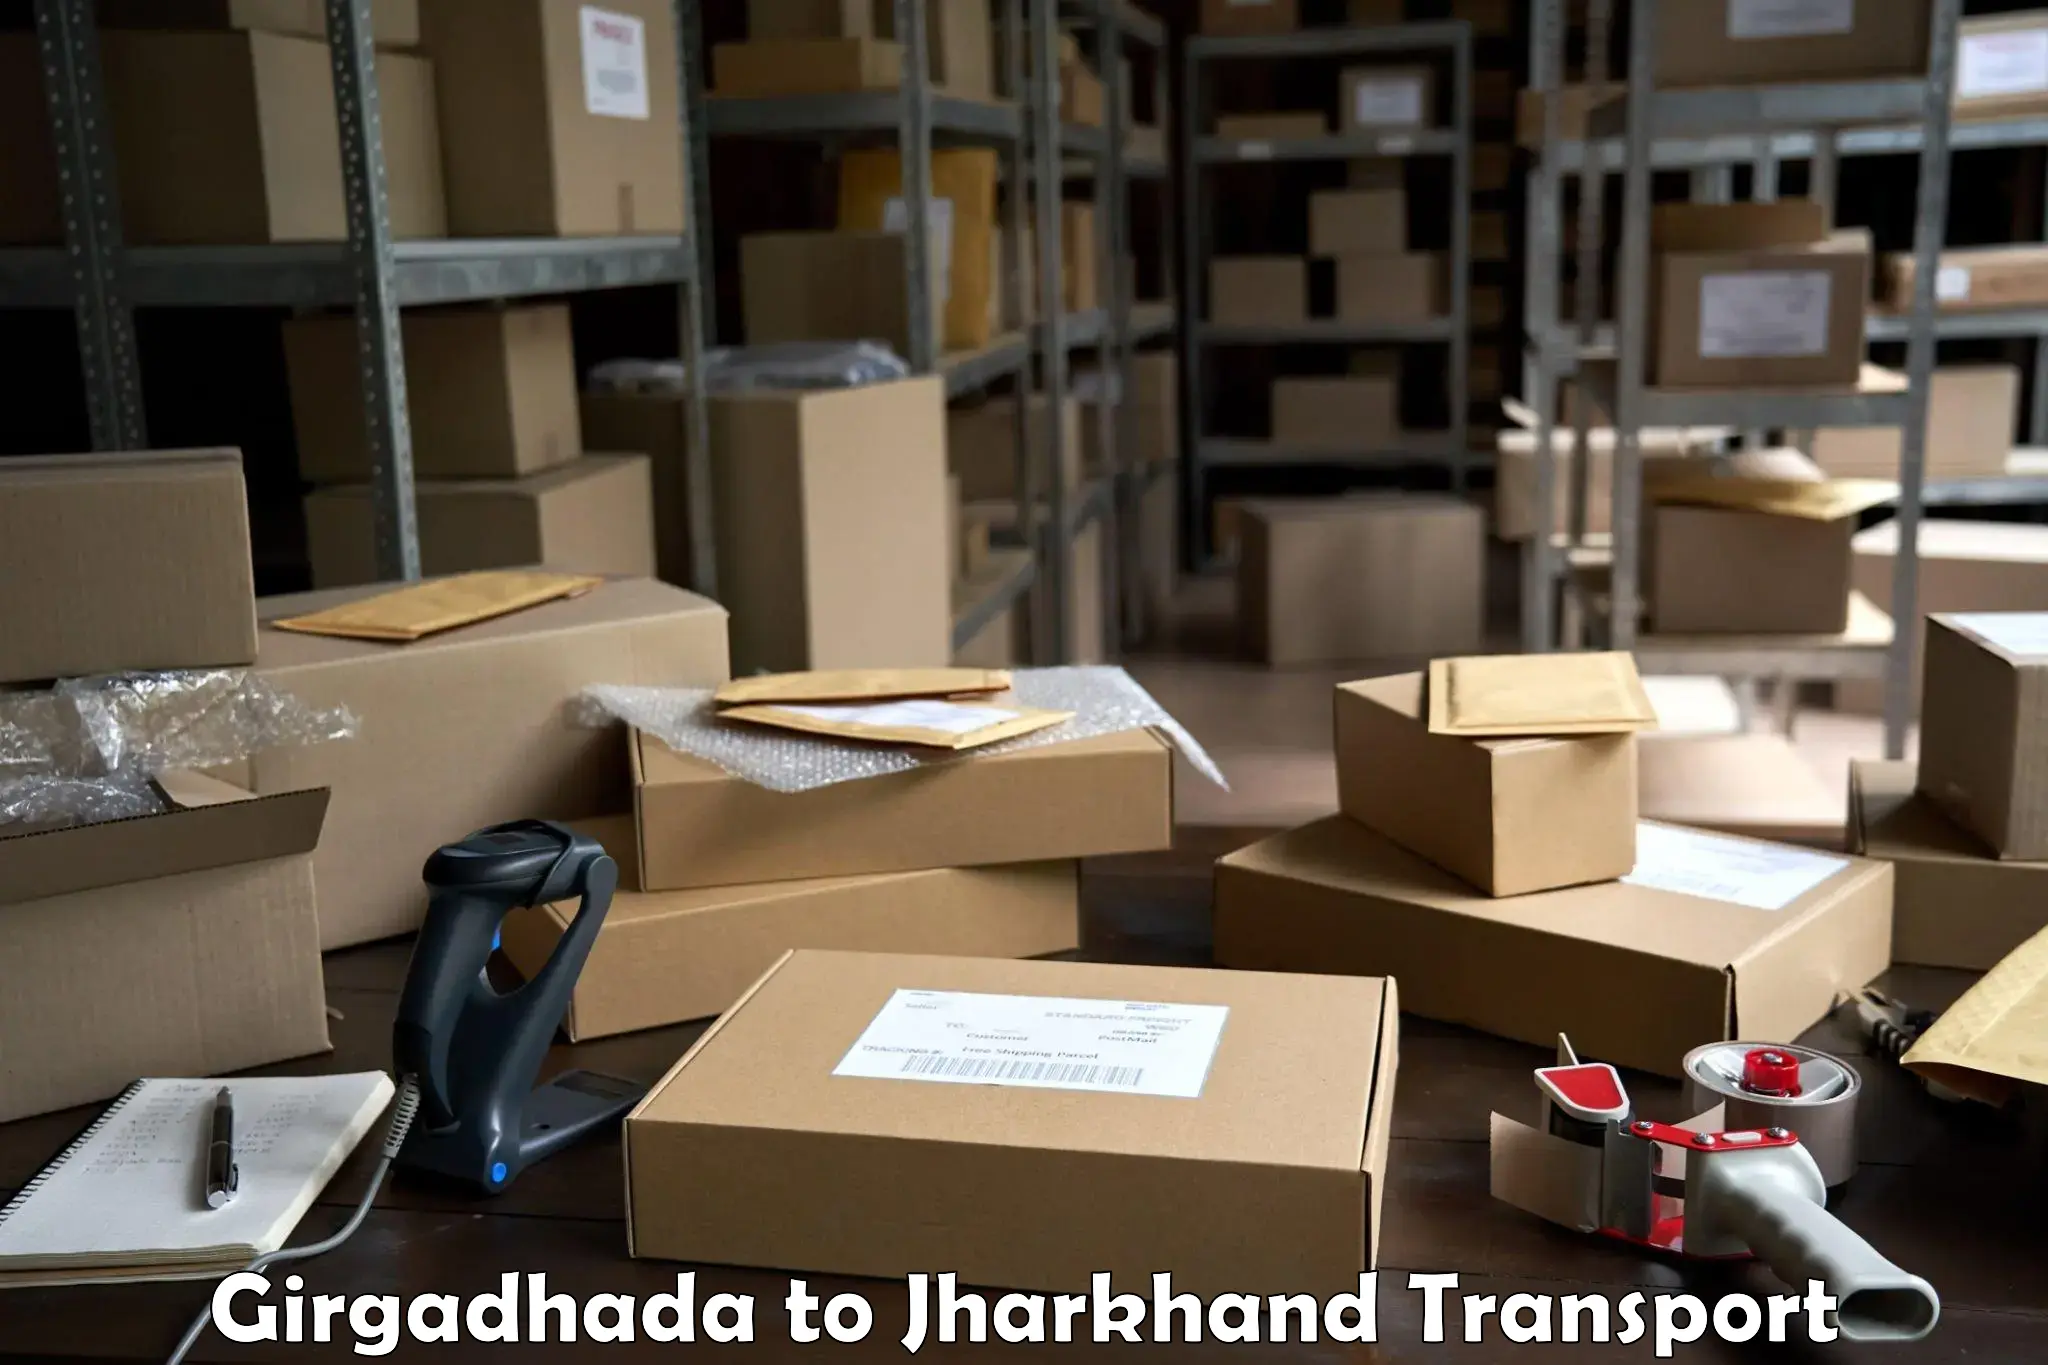 Furniture transport service Girgadhada to Bokaro